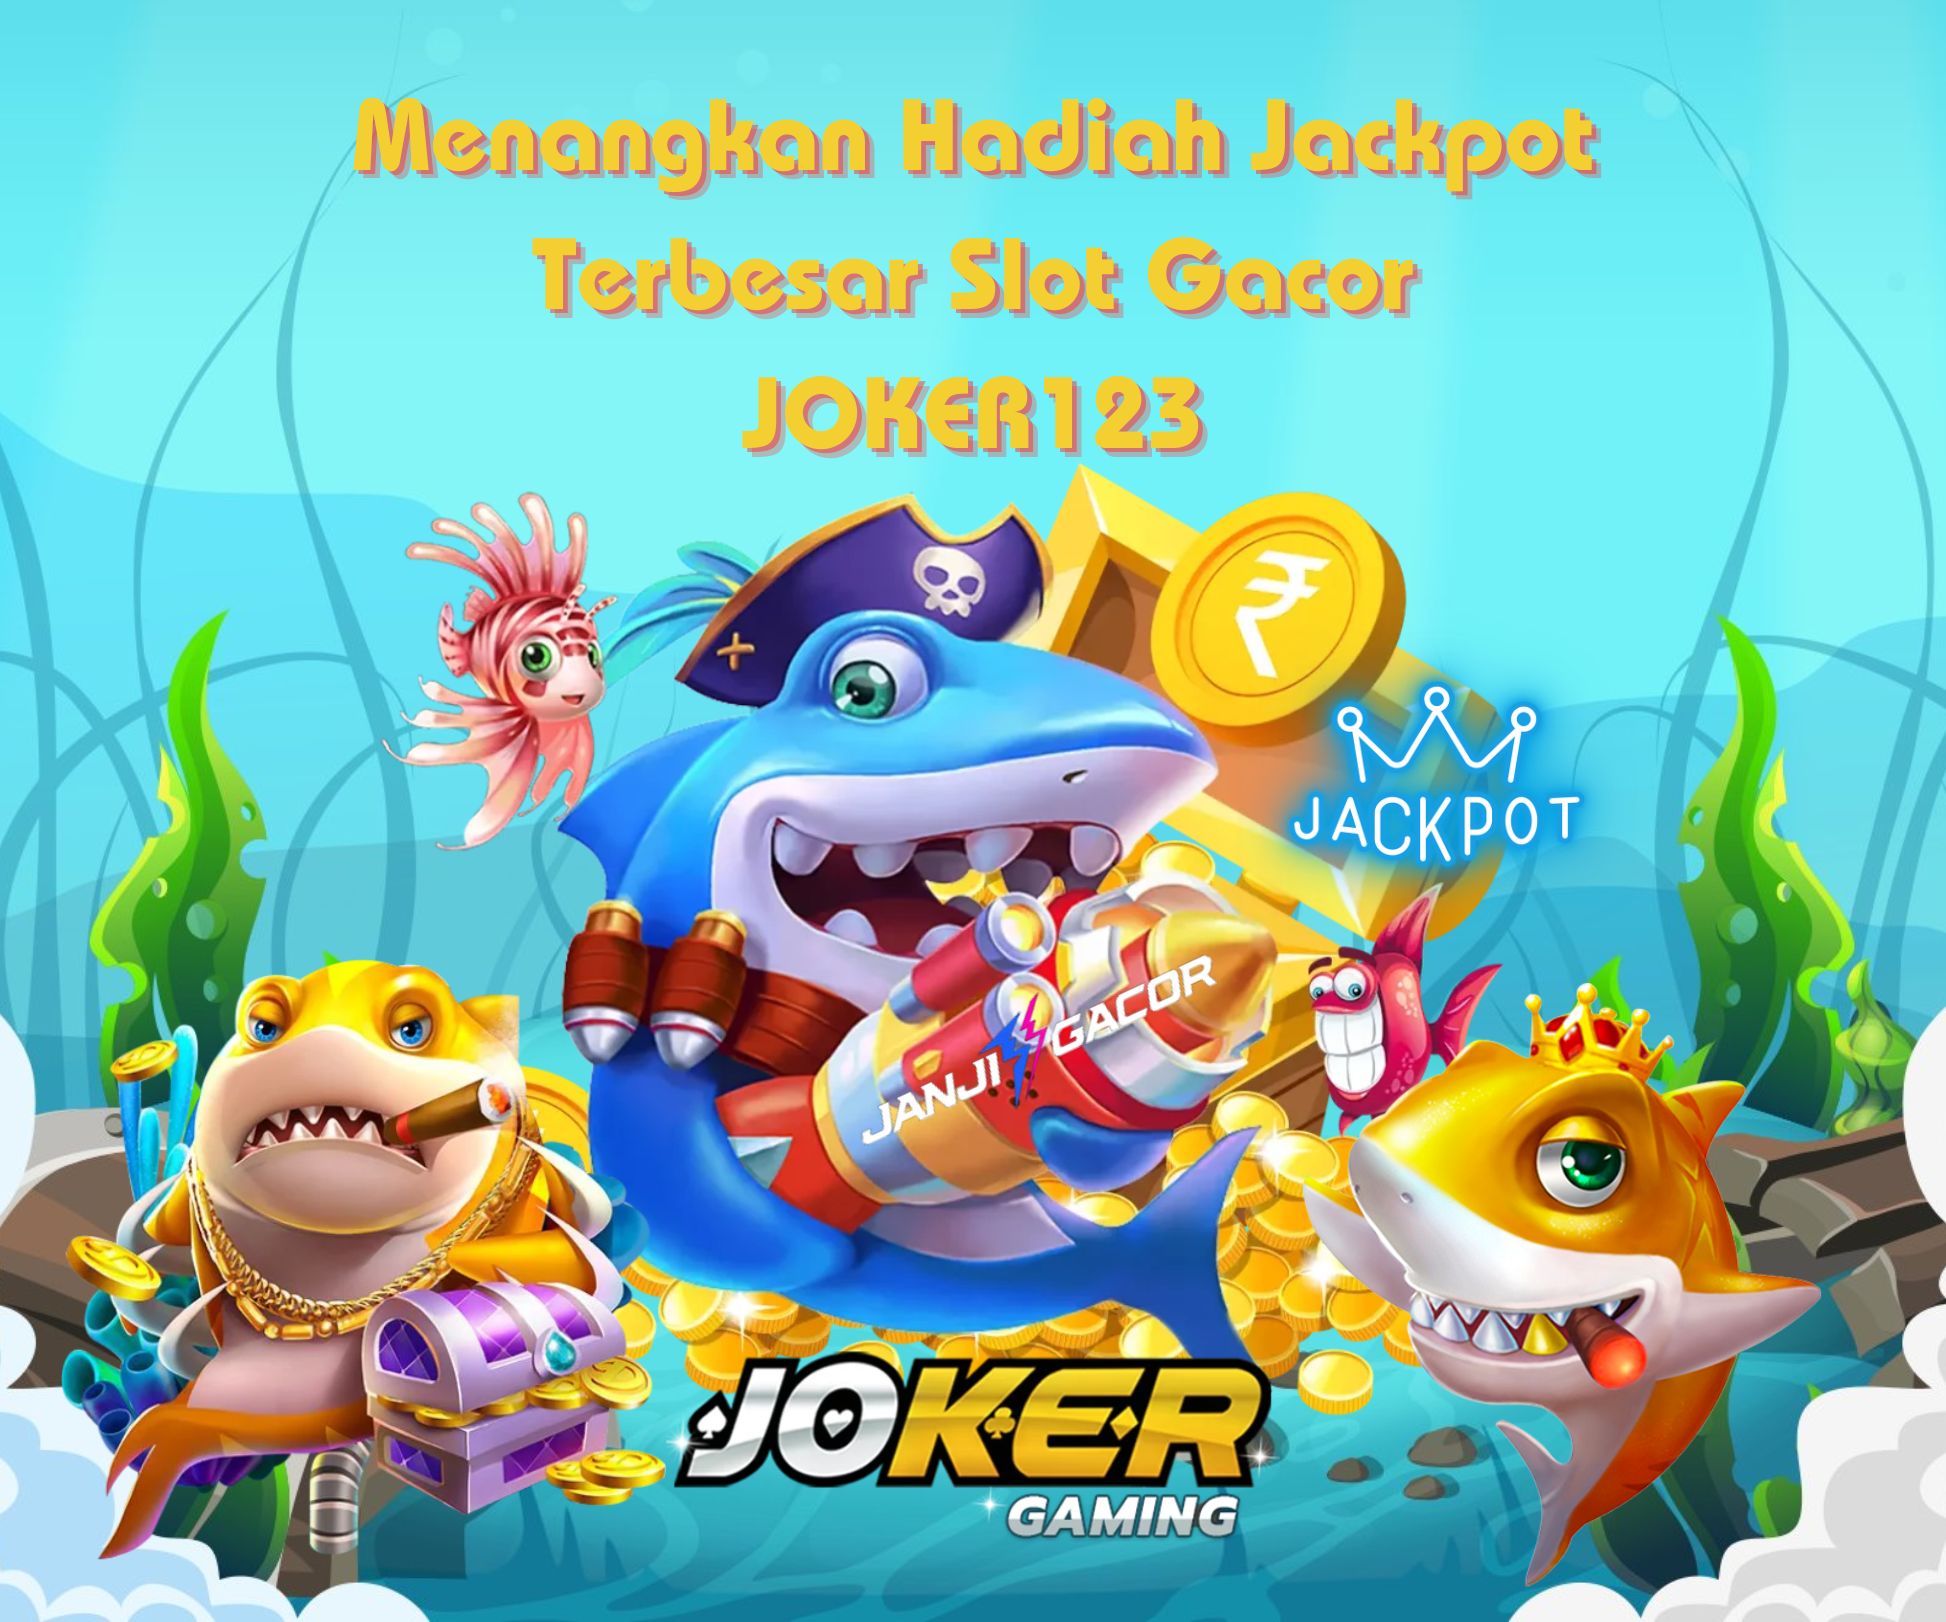 Joker123: Situs Daftar Slot Joker Gaming 123 Online Terbaru